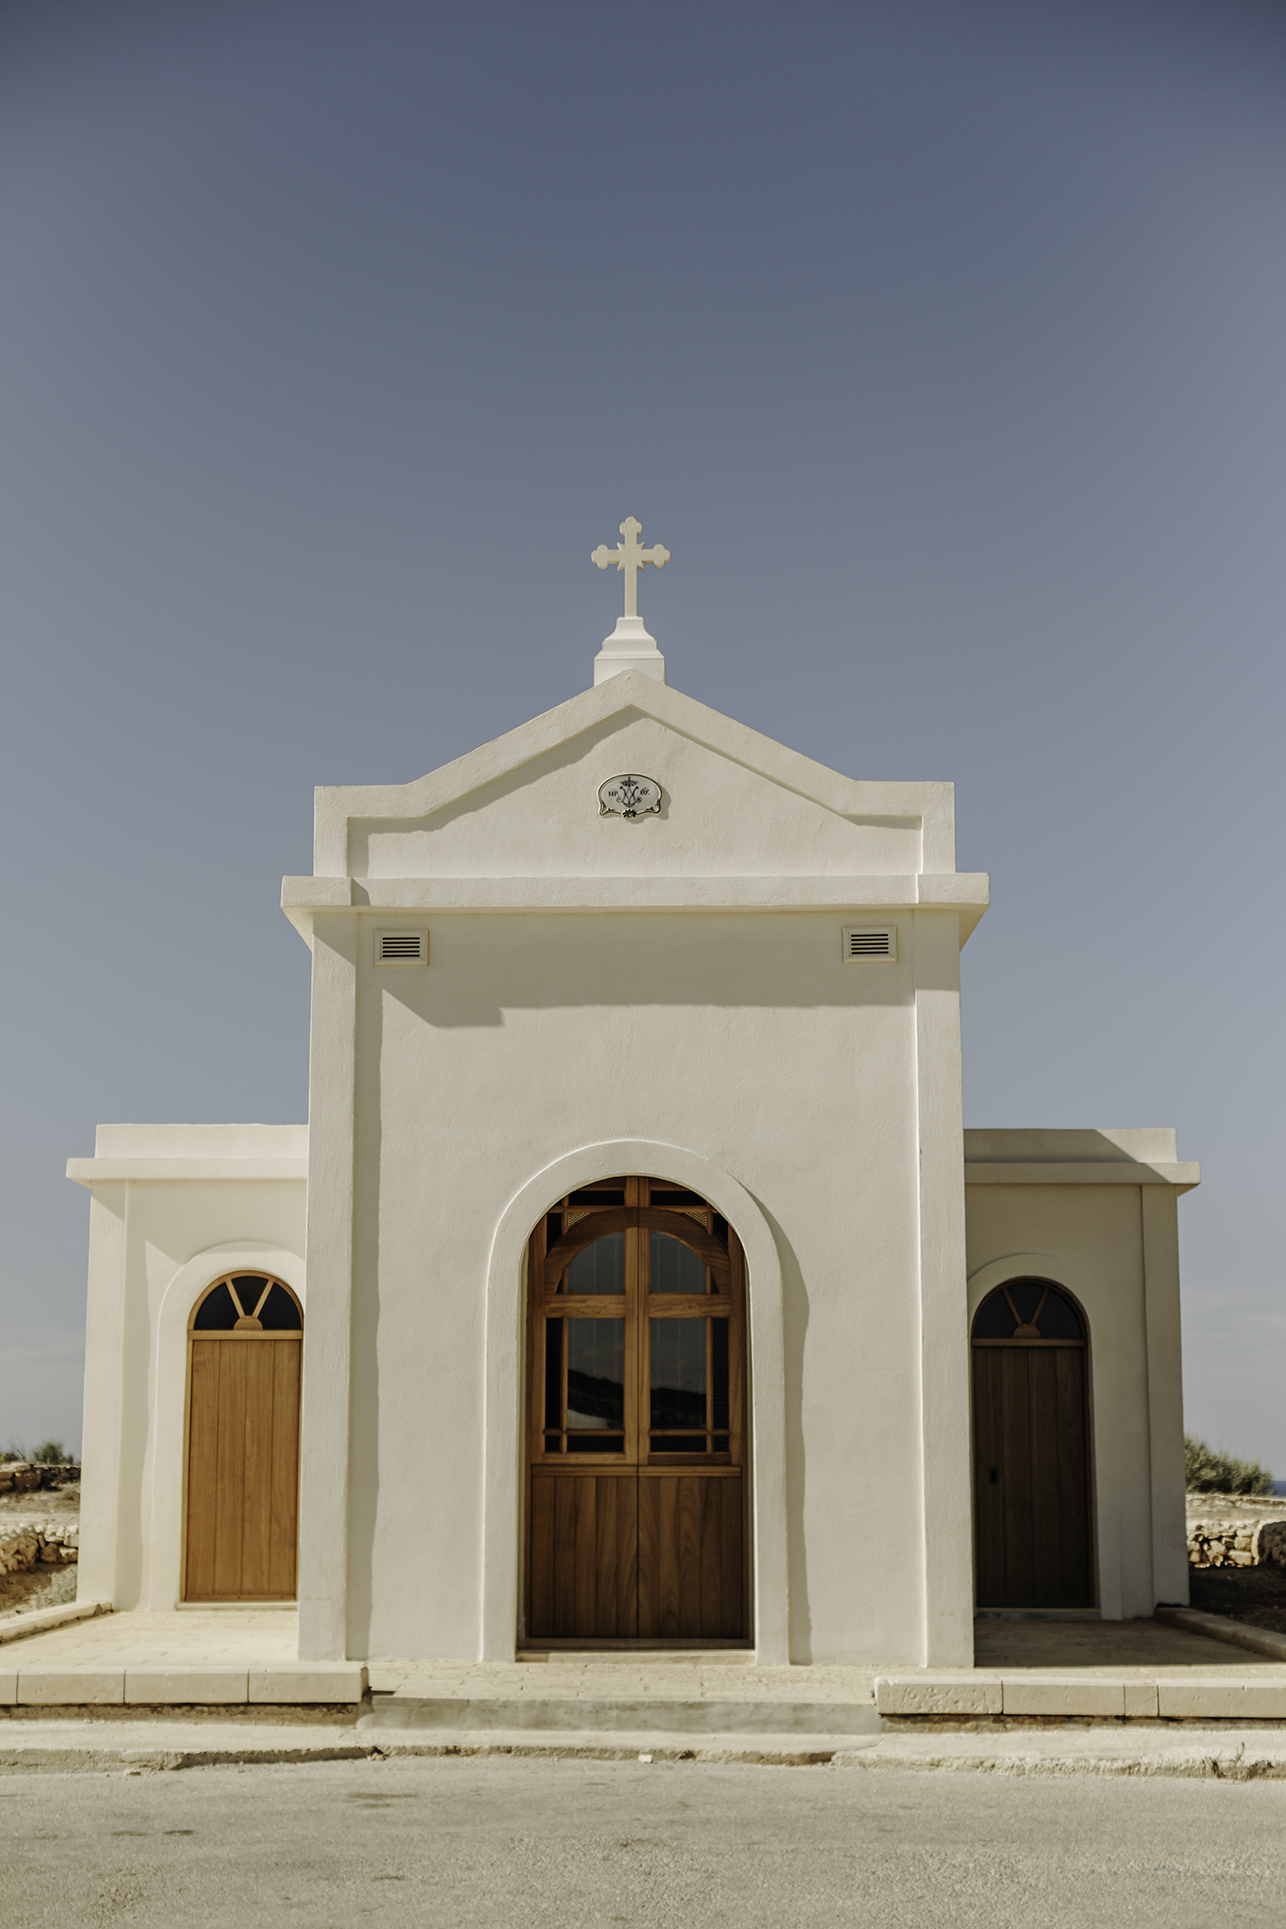 atrakcje malty, kapliczka przy morzu na malcie